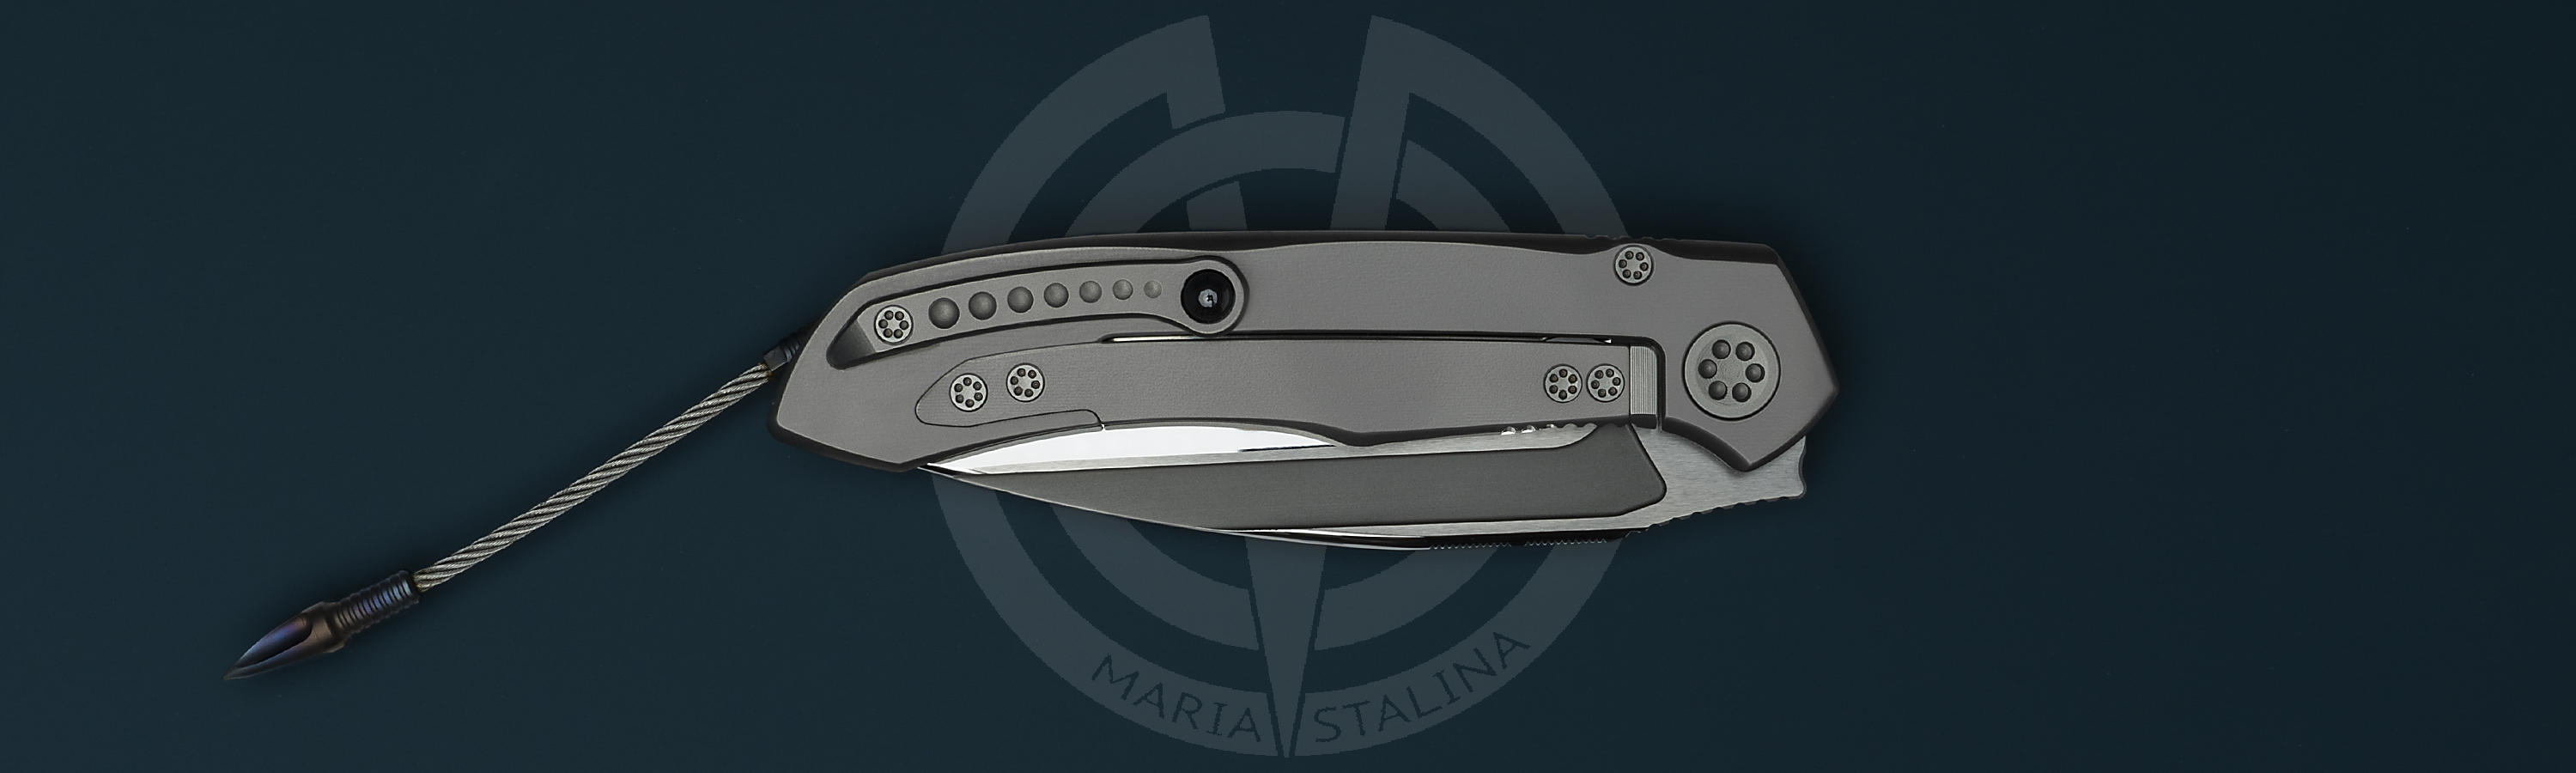 Custom tactical knife Anax